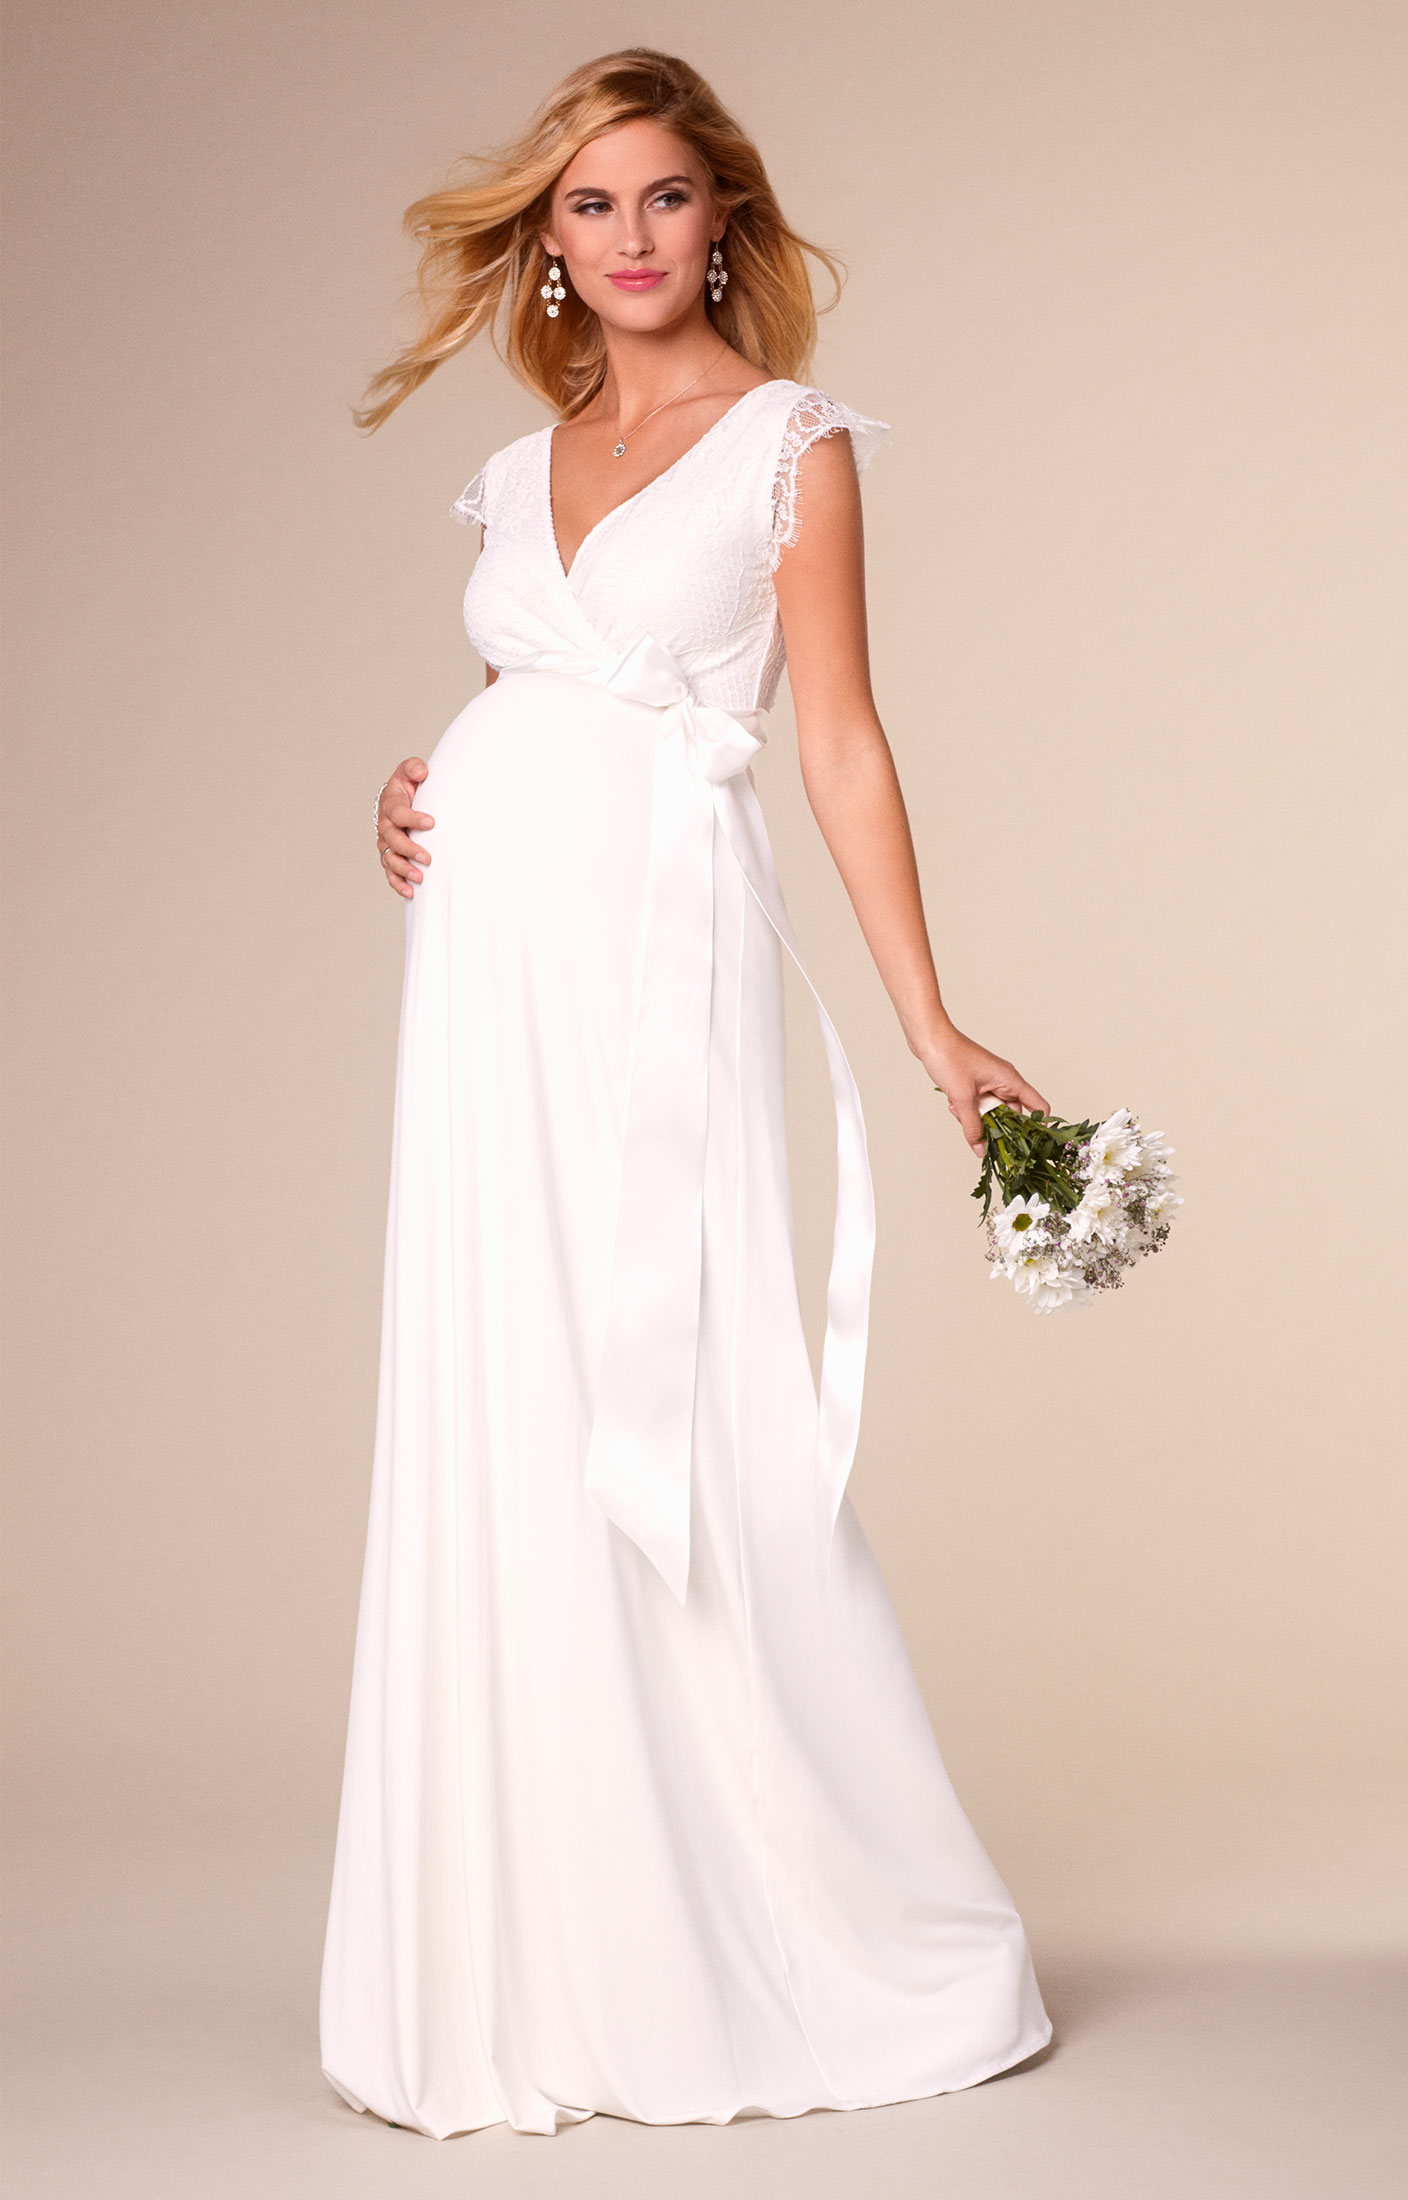 Платье для свадьбы для беременных